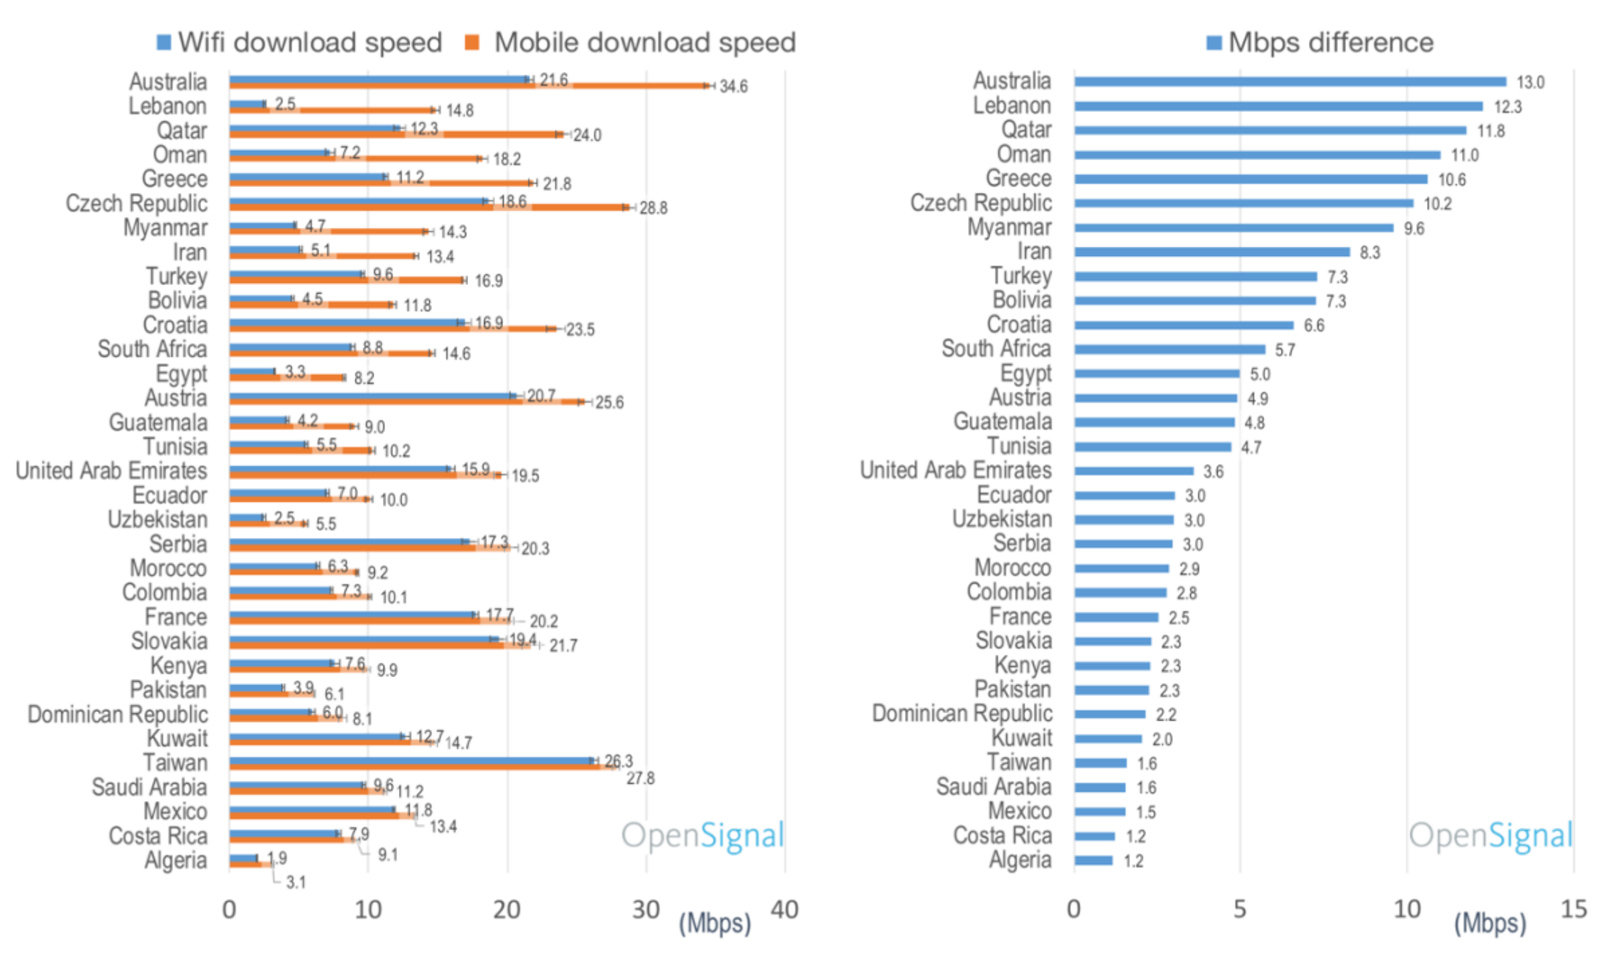 33 ülkenin mobil internet hızı, WiFi'dan yüksek